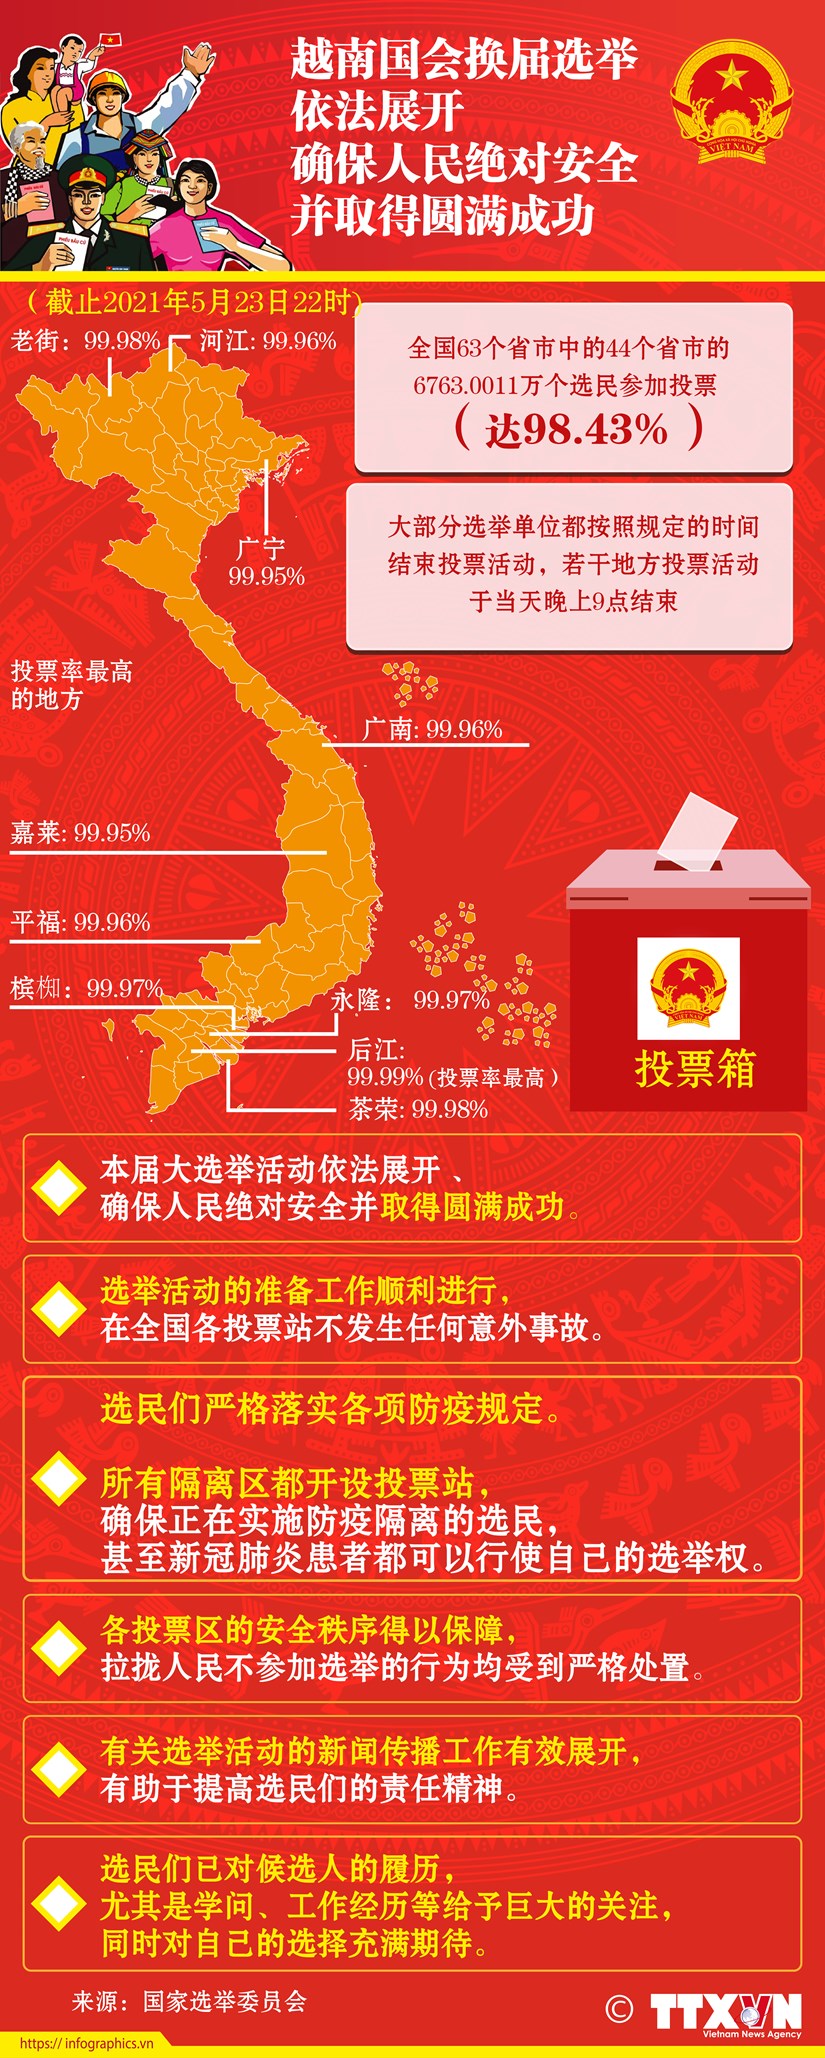 图表新闻：越南国会换届选举依法展开、确保人民绝对安全并取得圆满成功 hinh anh 1